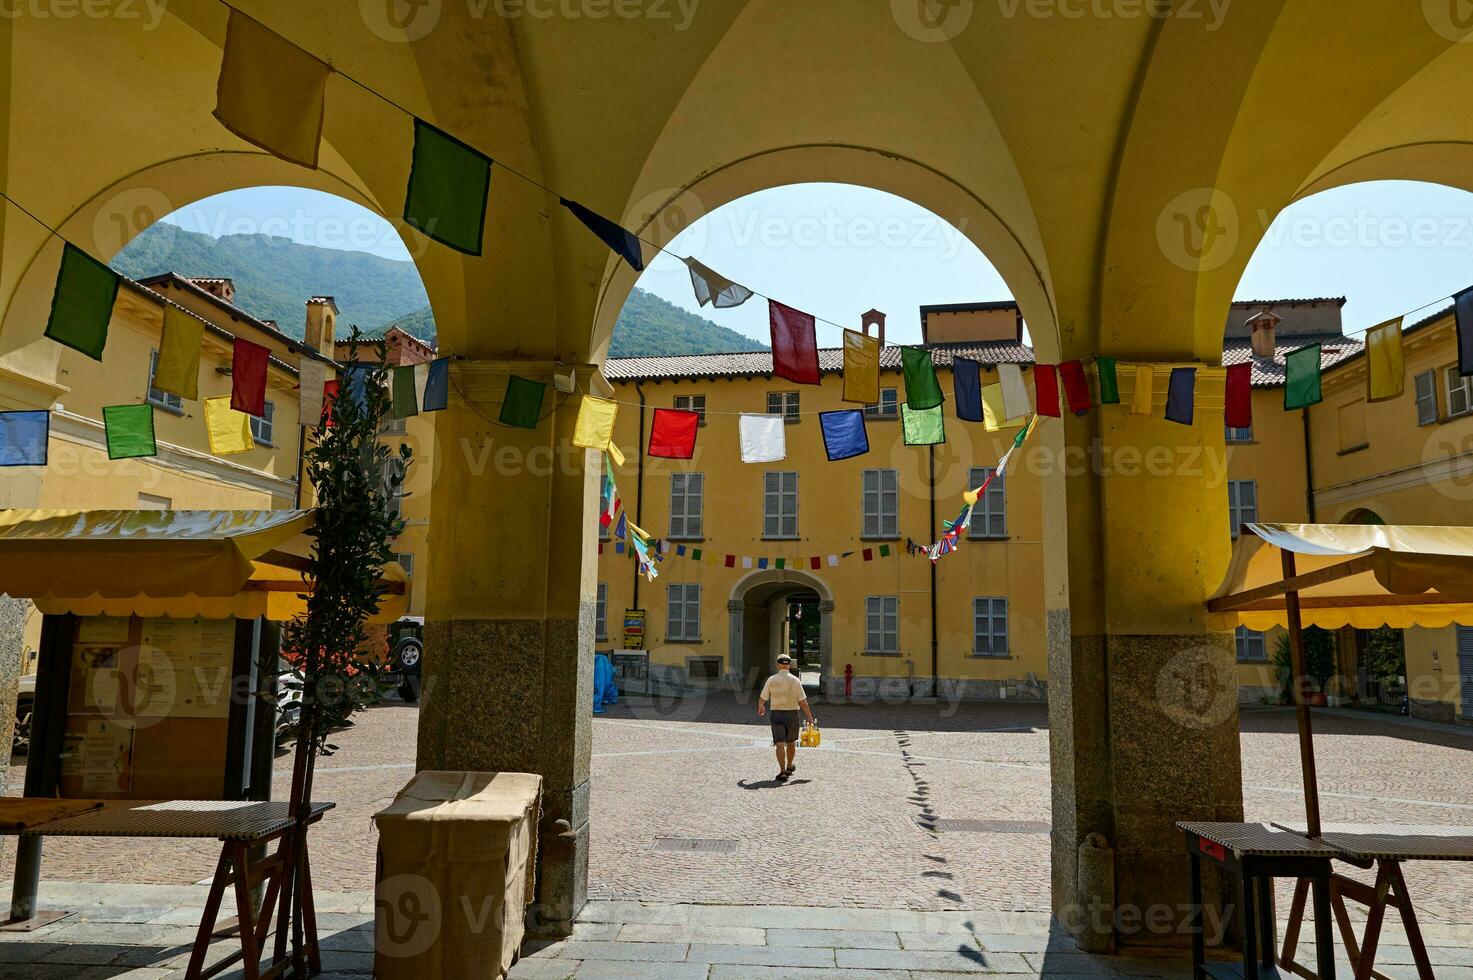 gård gränd i medeltida italiensk stad, dekorerad med färgrik flaggor för en festival. resa och turism begrepp foto